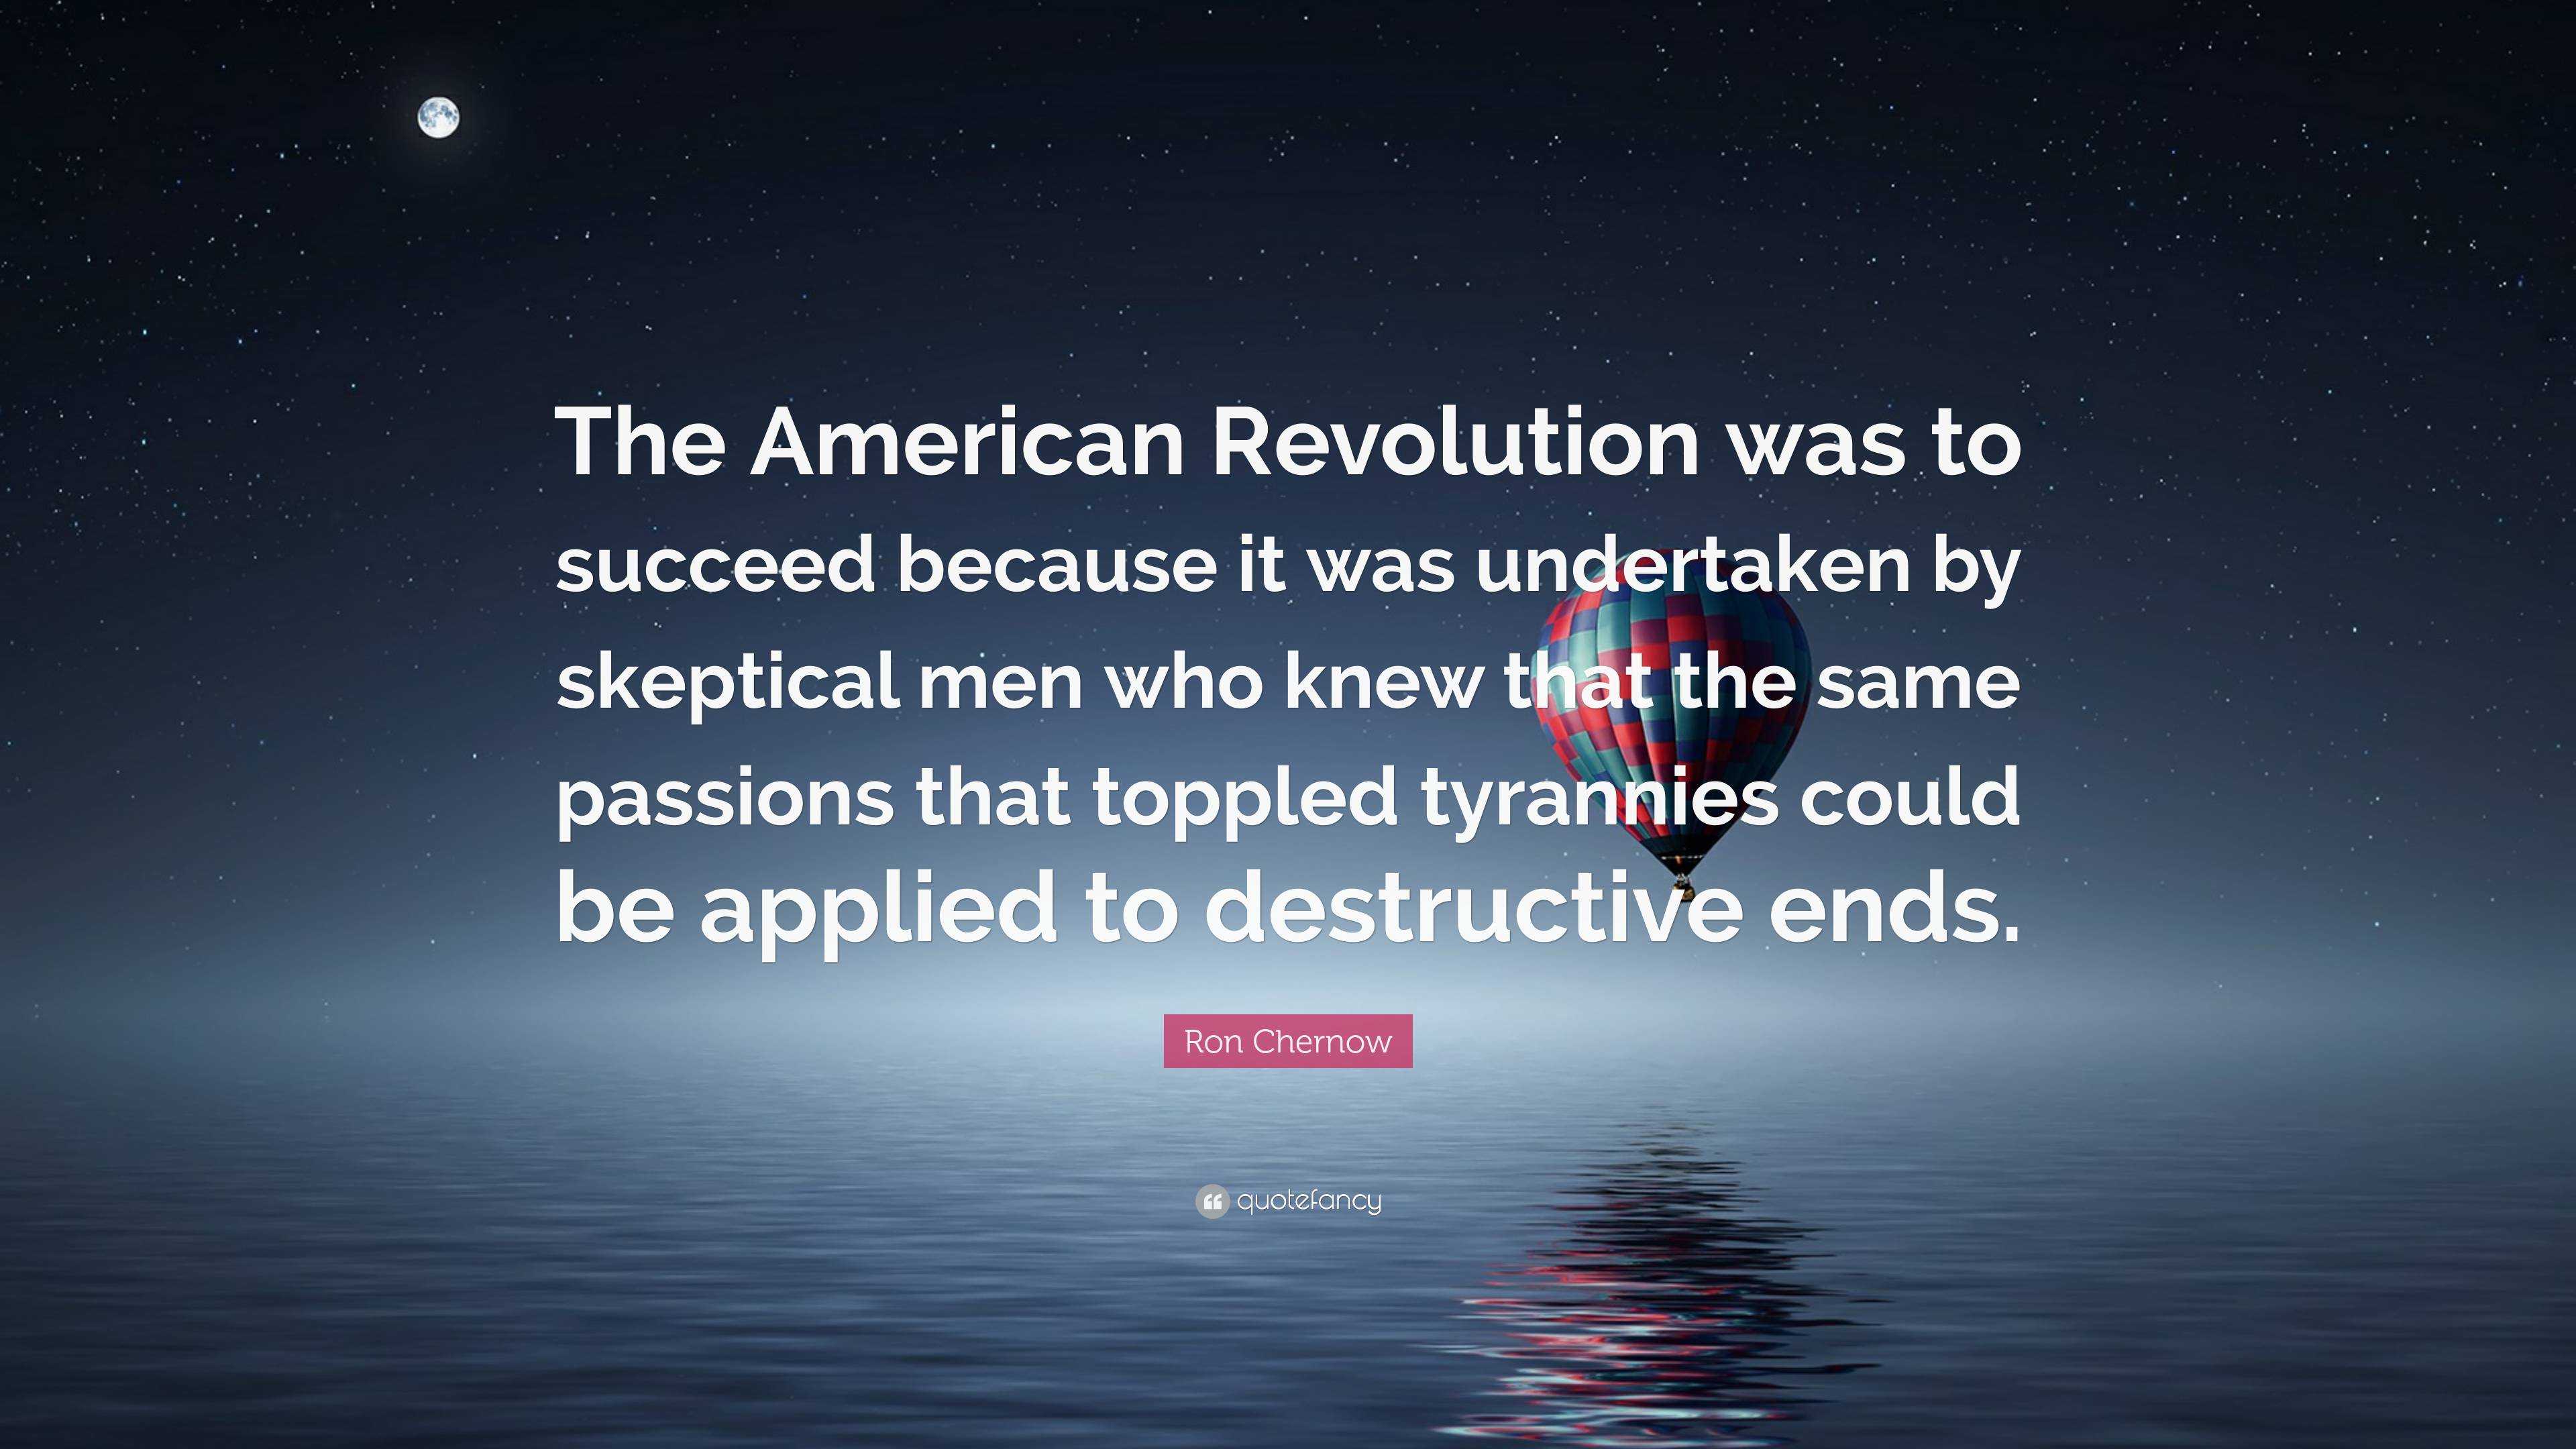 A Revolução Americana teve sucesso Ron Chernow - Pensador